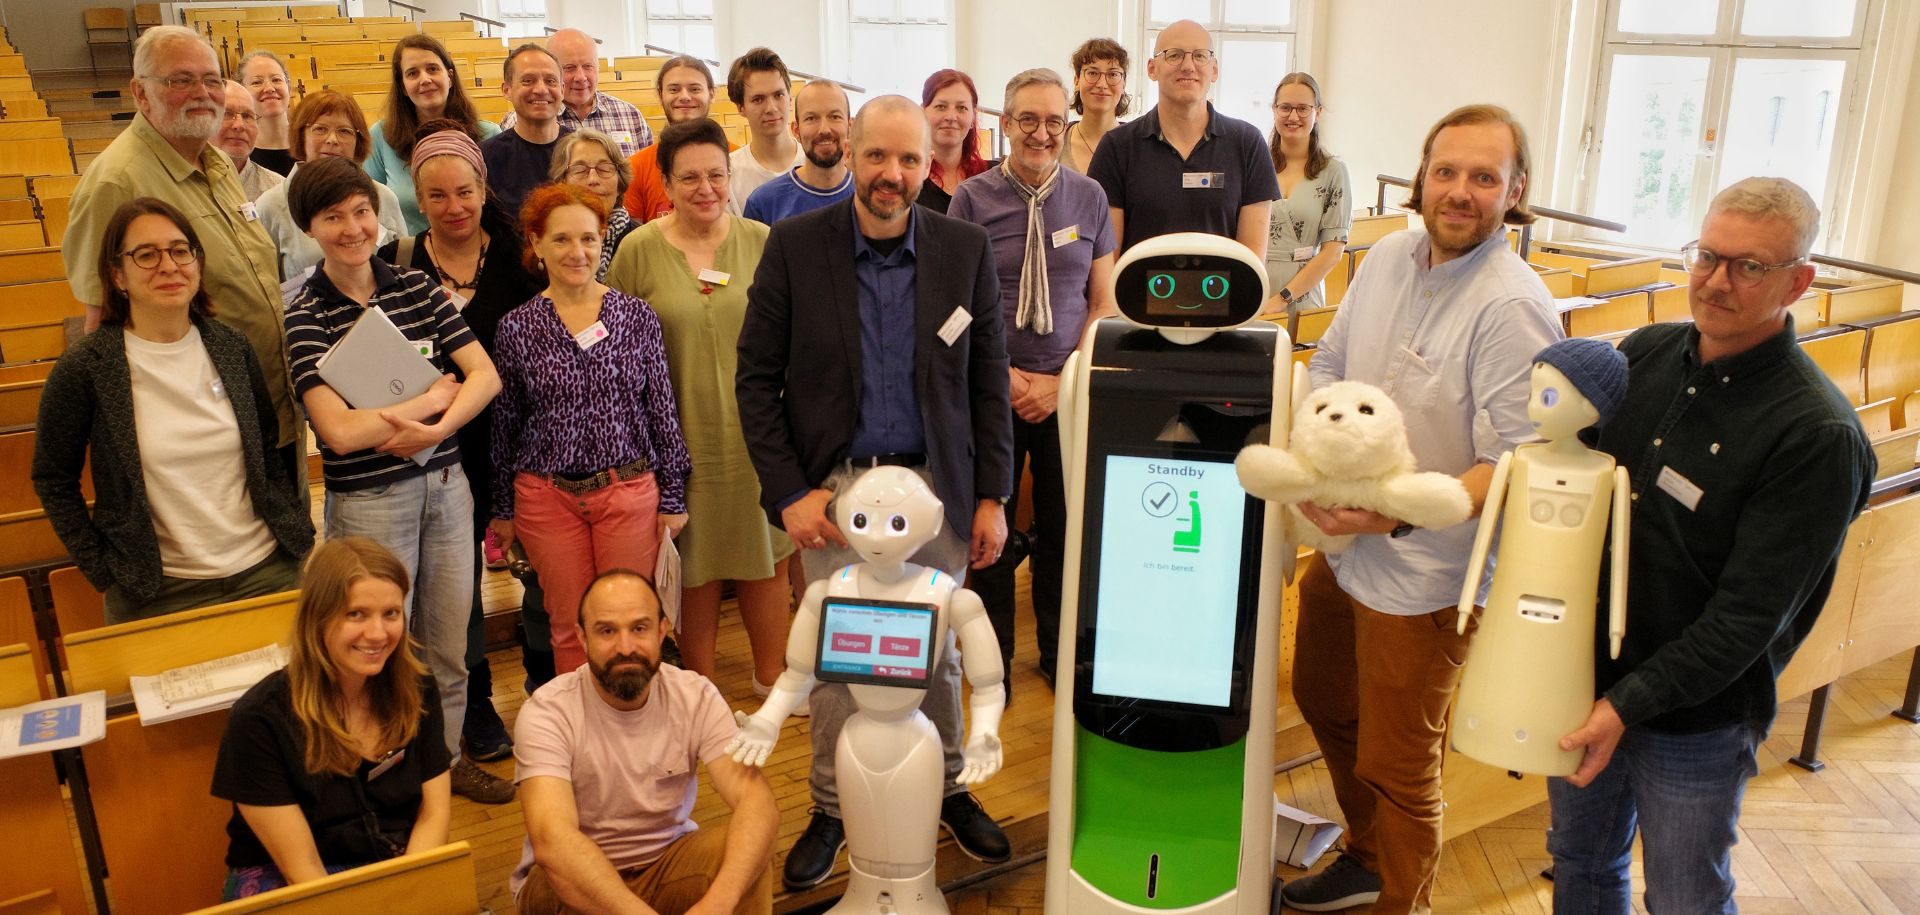 Gruppenbild der Bürgerkonferenz Robotik mit zwei humanoiden Robotern, Foto: Ruben Sakowsky